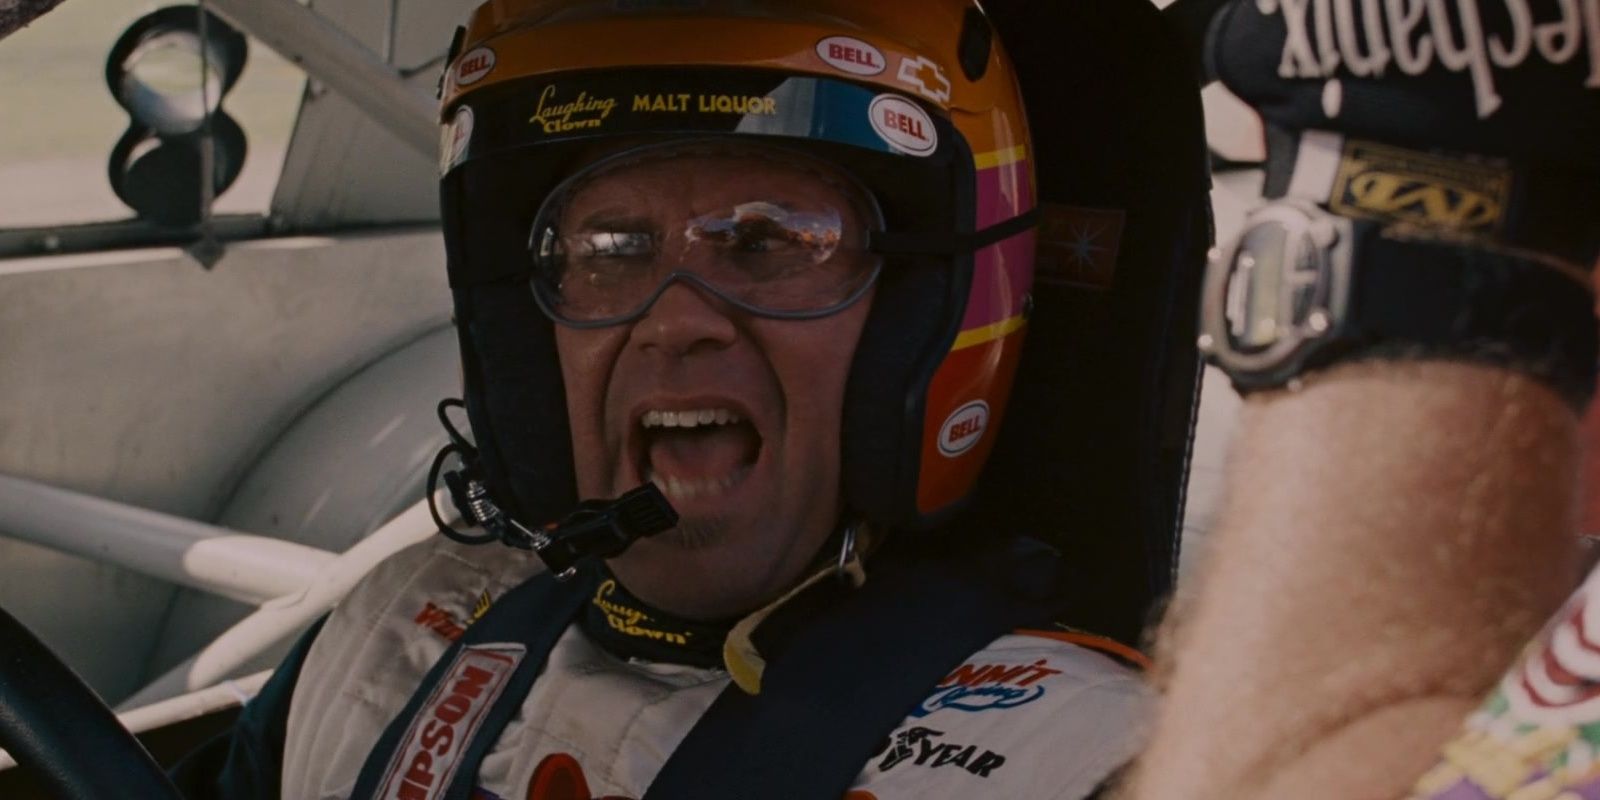 Ricky Bobby screaming in race car in Talladega Nights